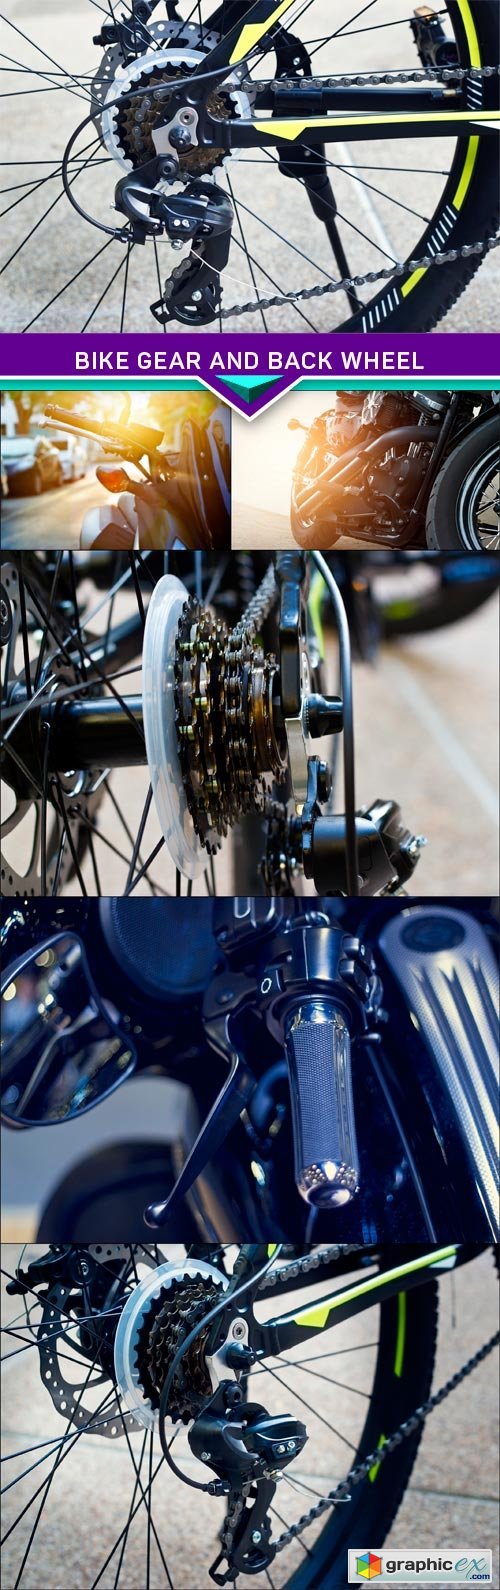 Bike gear and back wheel 6X JPEG